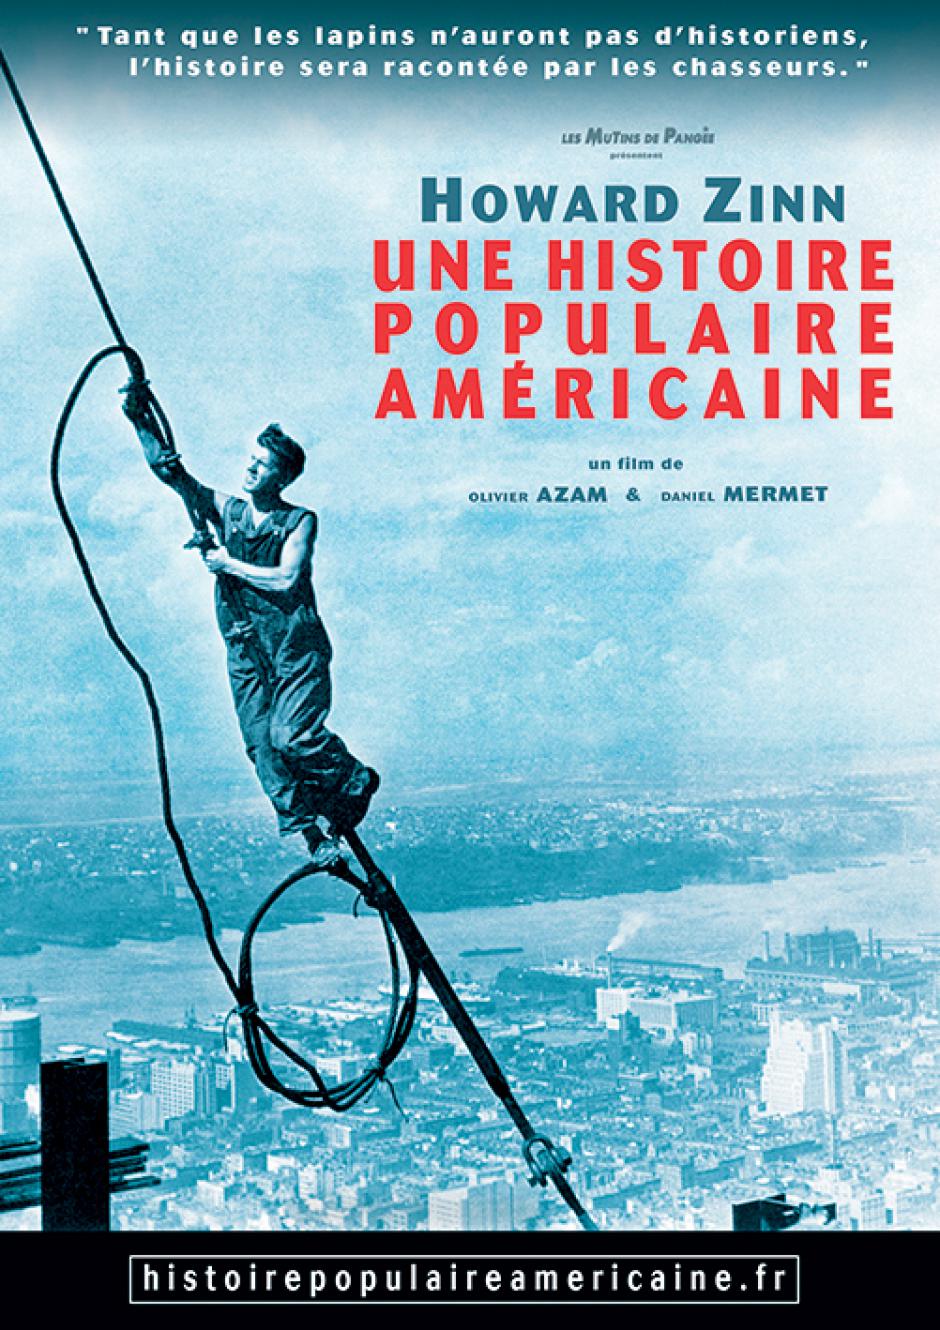 10 octobre, Clermont - SNES Retraités-Oise-Ciné-débat « Howard Zinn, une histoire populaire américaine »